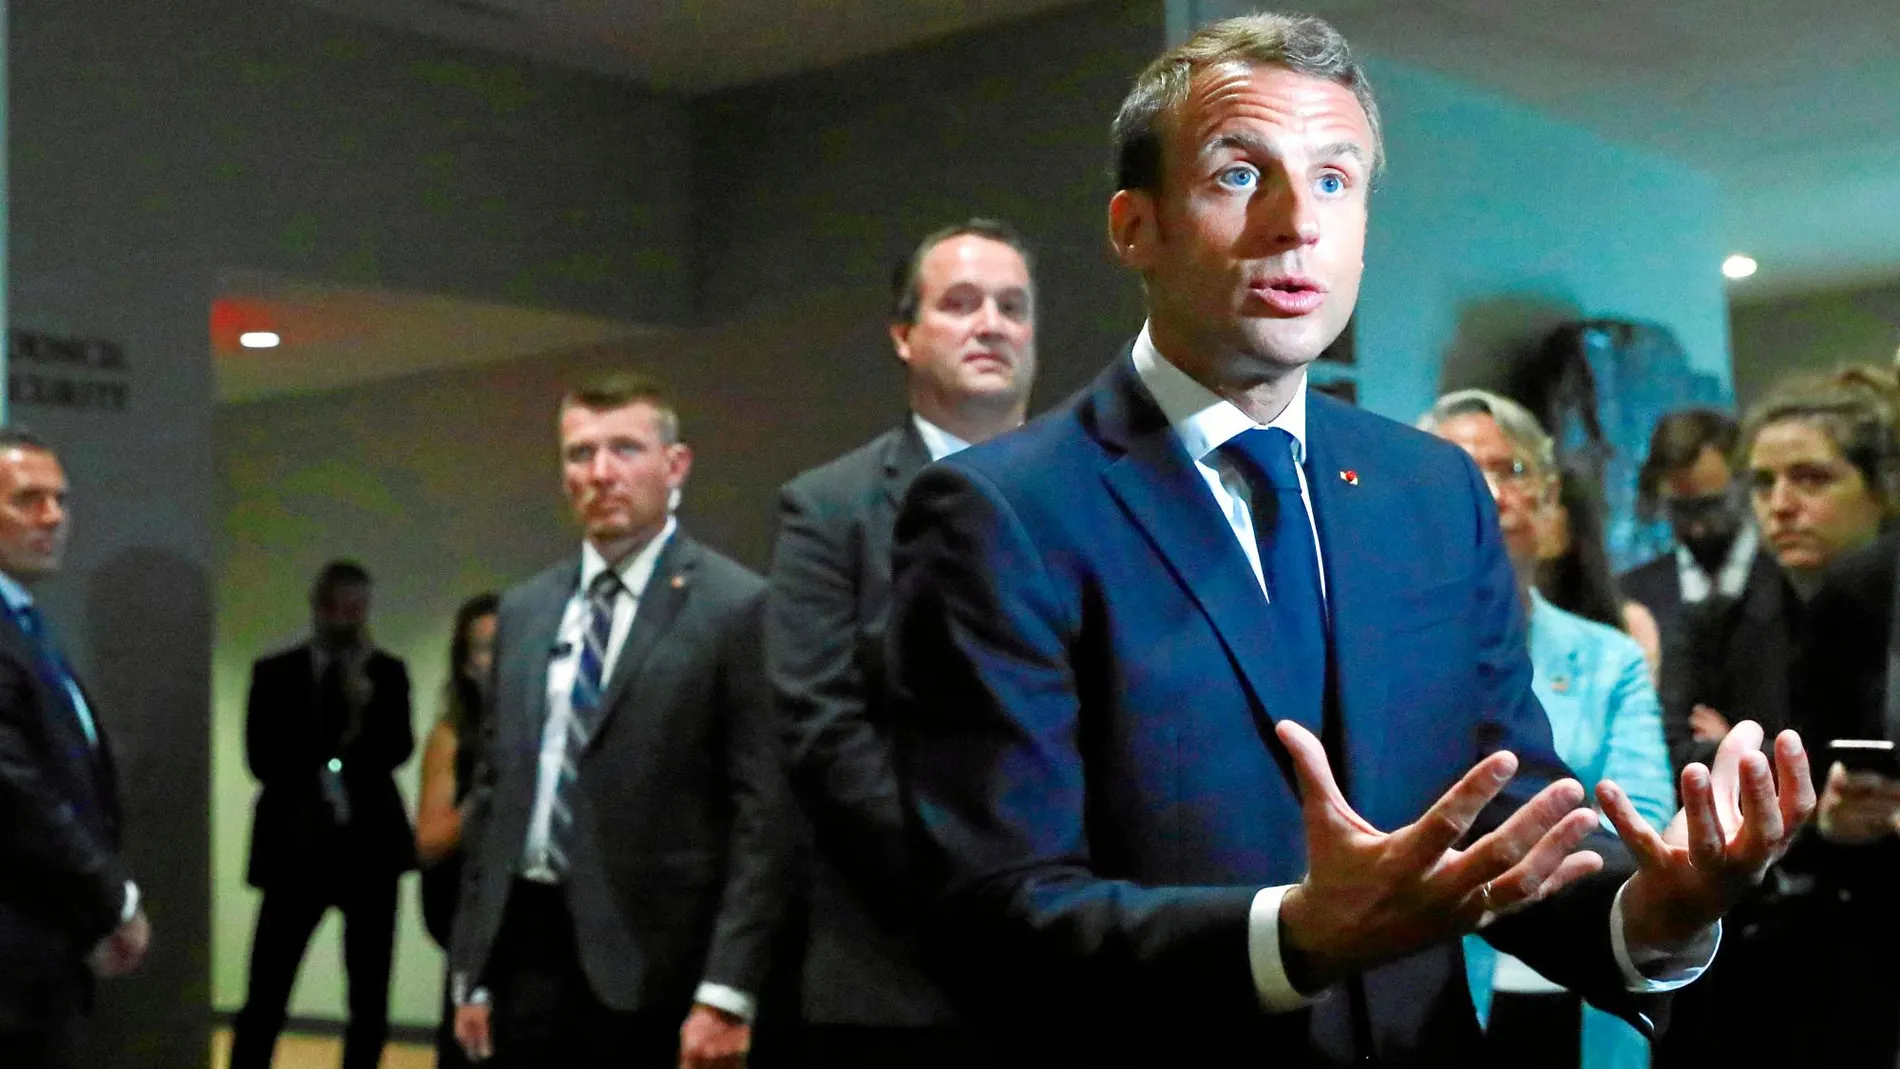 Tras la crisis de los «chalecos amarillos», el presidente francés, Emmanuel Macron, ha decidido frenar la velocidad de sus reformas para rebajar la contestación social